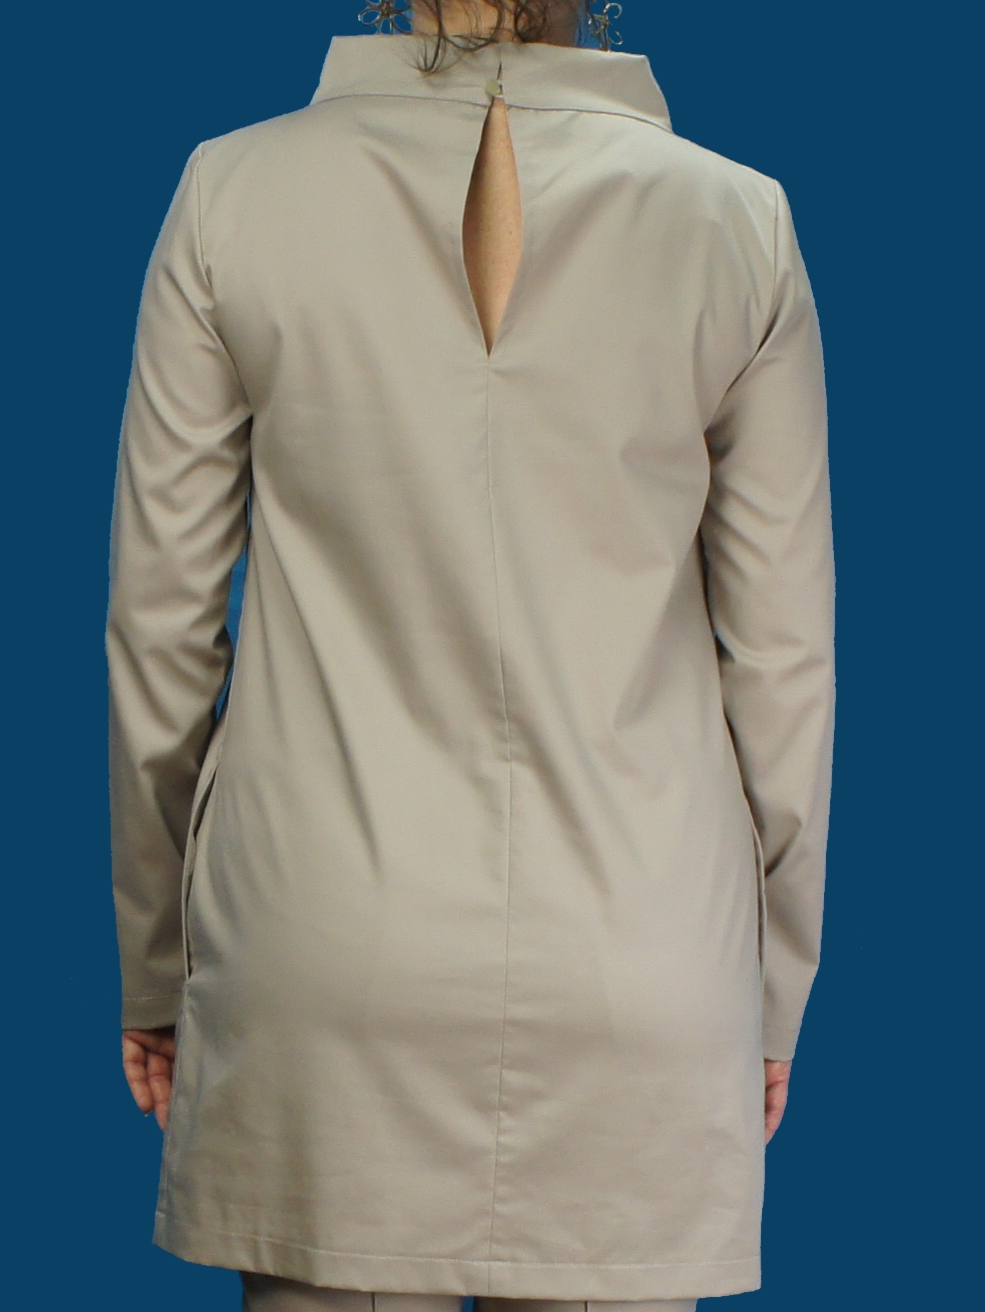 medical scrubs khaki tan color, medical scrubs for women